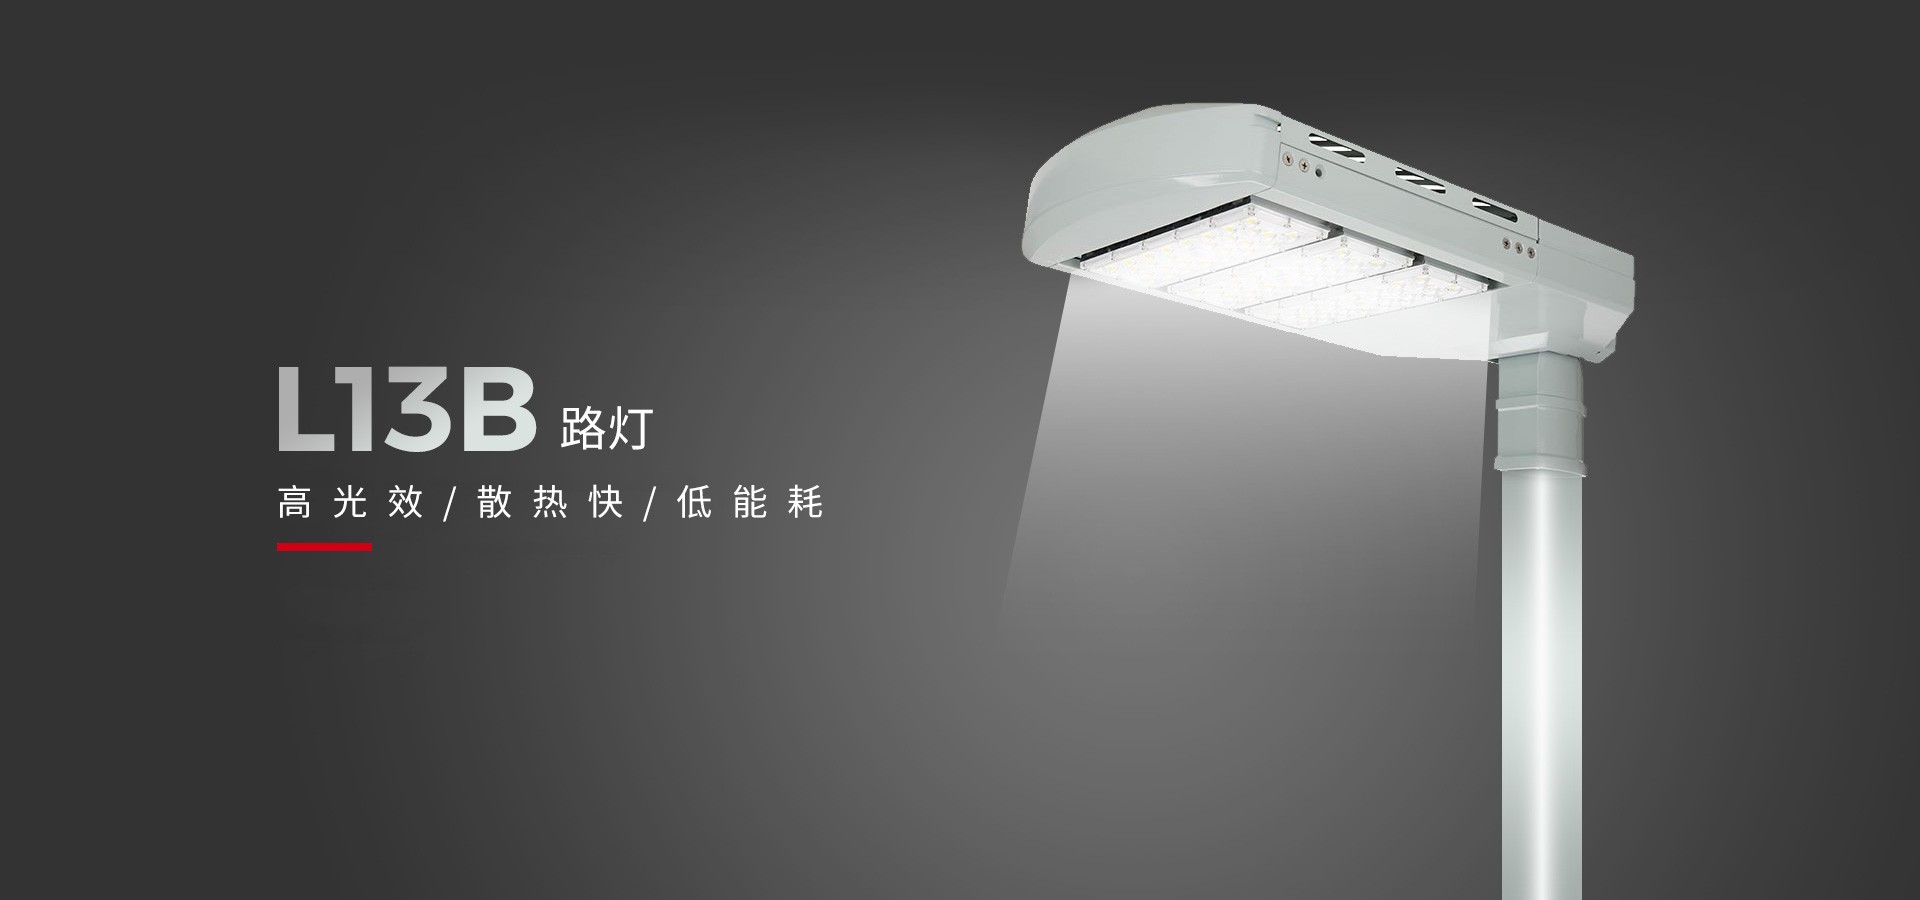 立洋光電 I 節能之光LED路燈L13B 點亮低碳新視界！